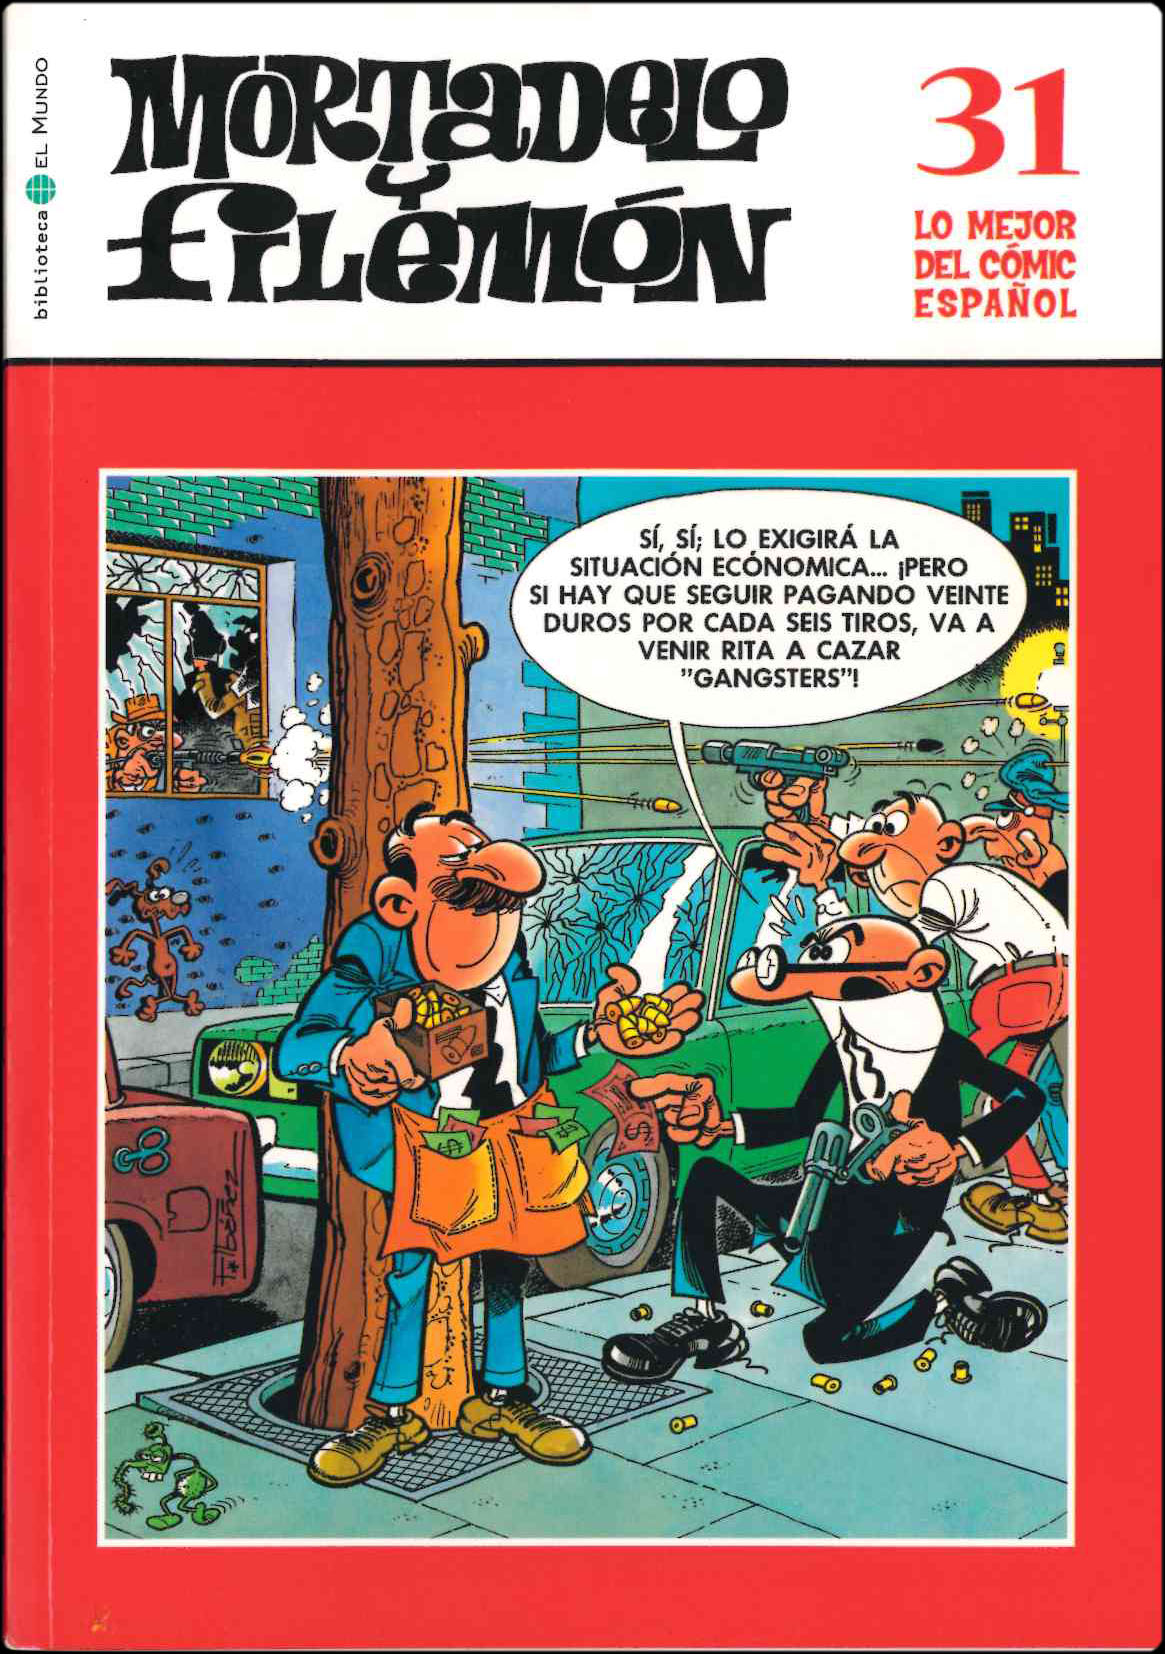 Lo mejor del Cómic Español. Grupo Zeta: El Mundo / Ediciones B 2006. Nº 31. Mortadelo y Filemón